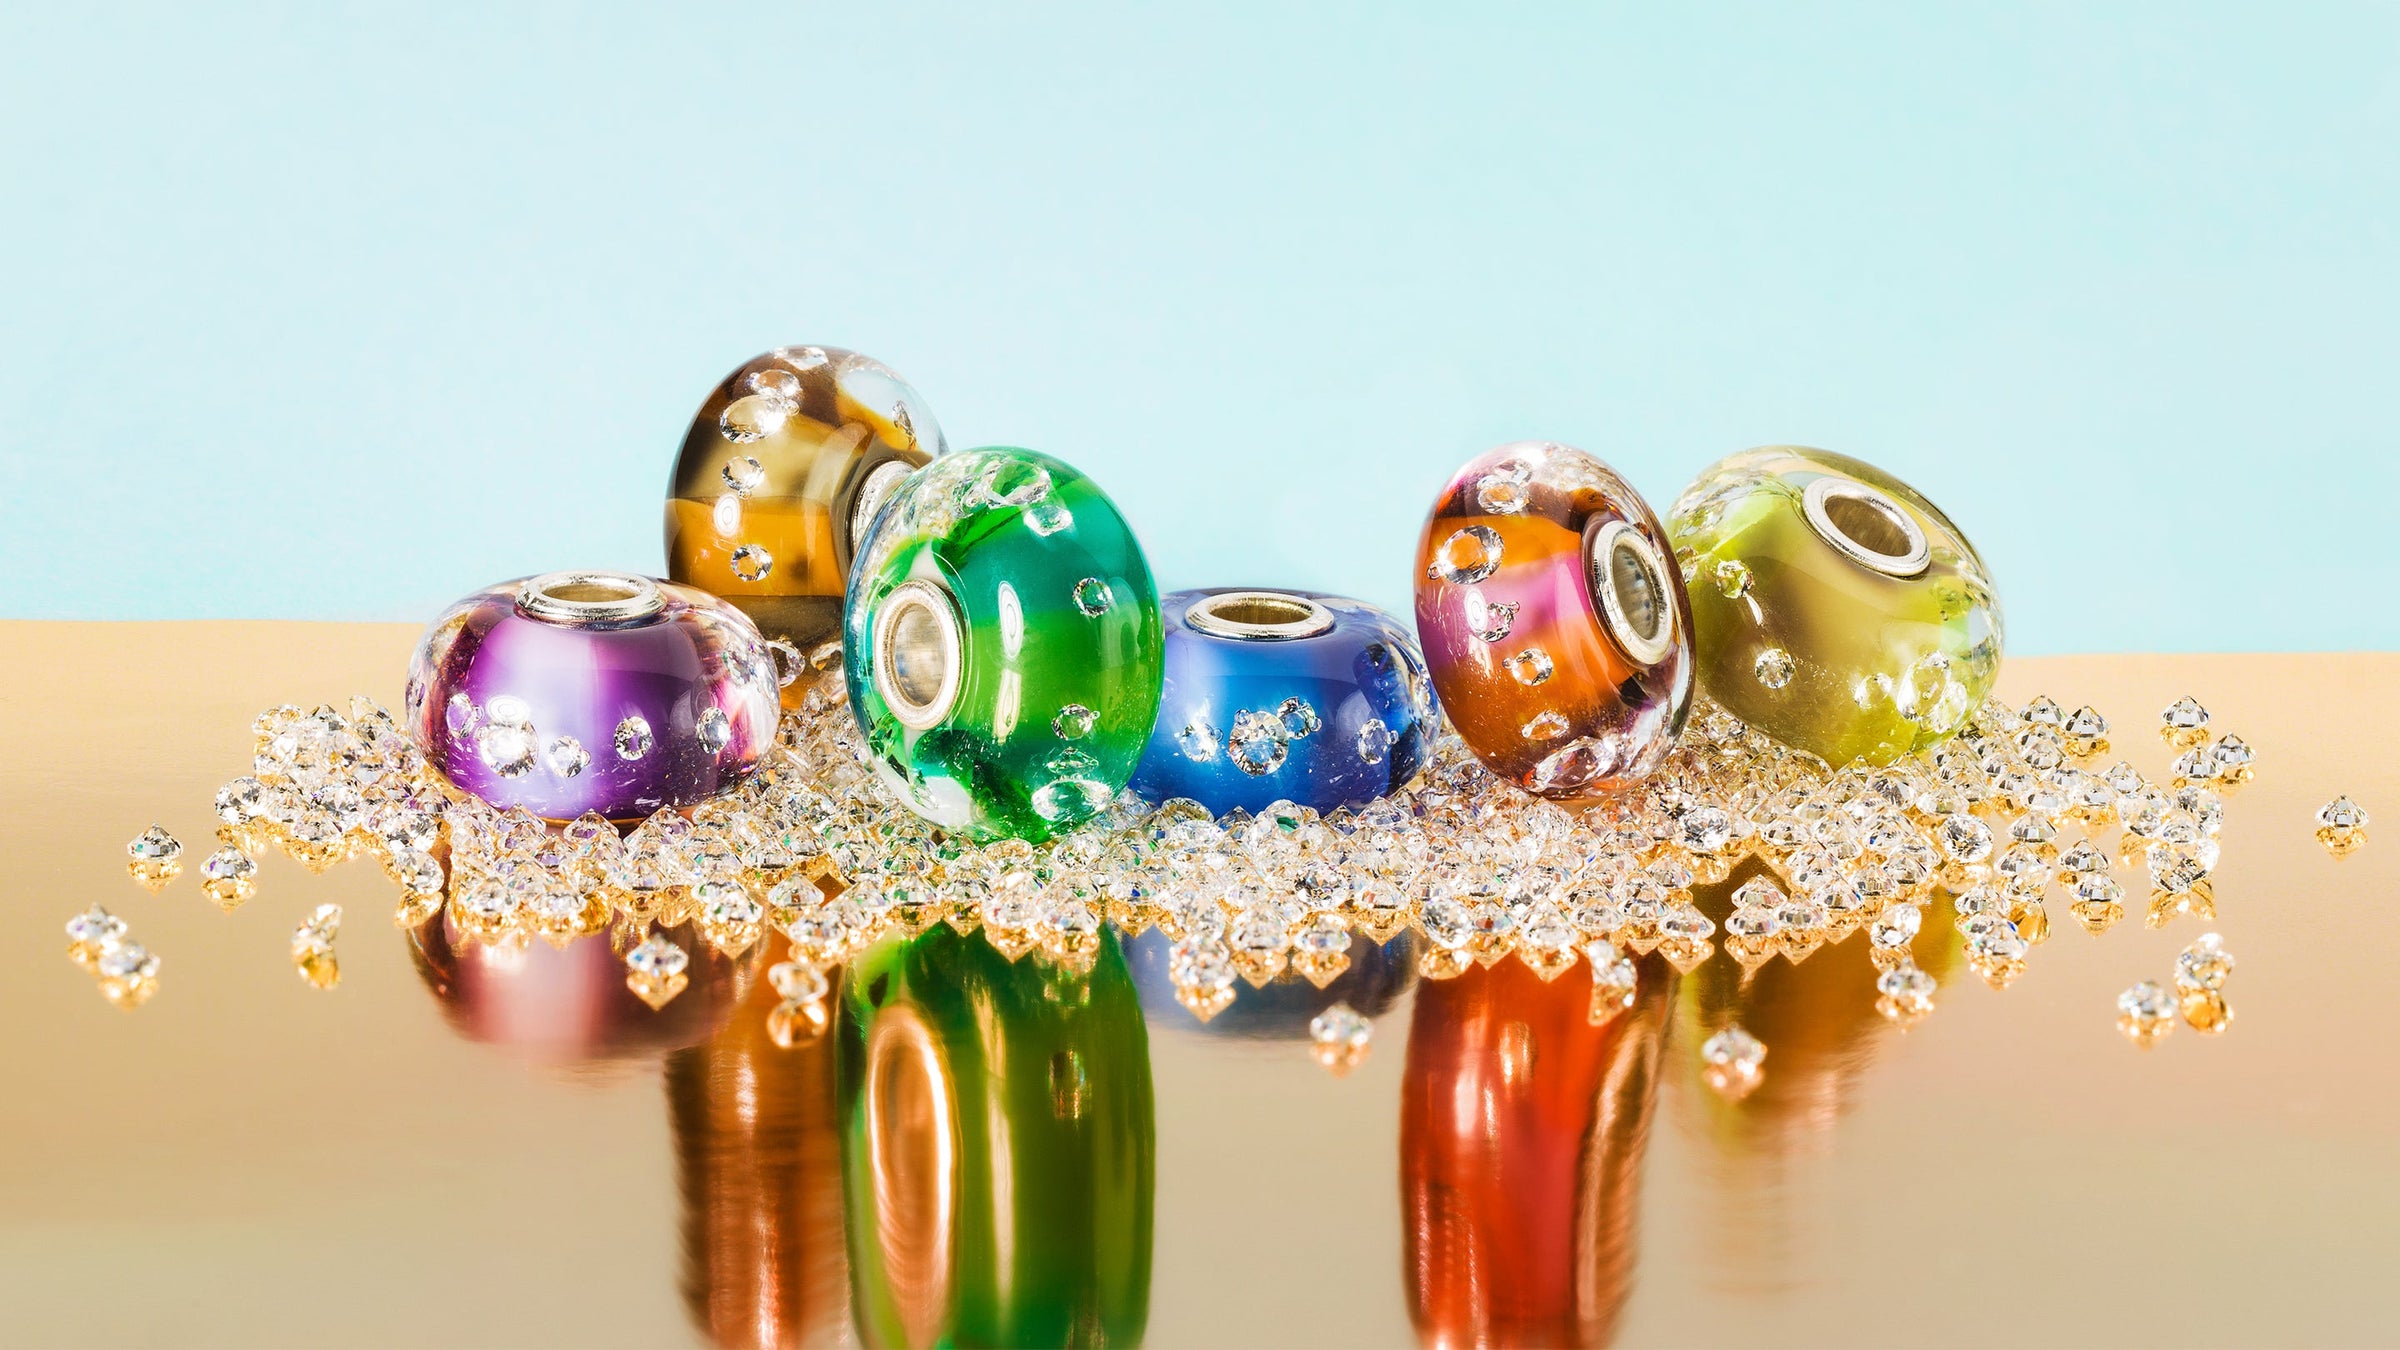 Die Kollektion enthält 6 Glasbeads. Alle Beads sind horizontal zweifarbig in knalligen Farben gehalten und enthalten 13 eingebettete Zirkonias